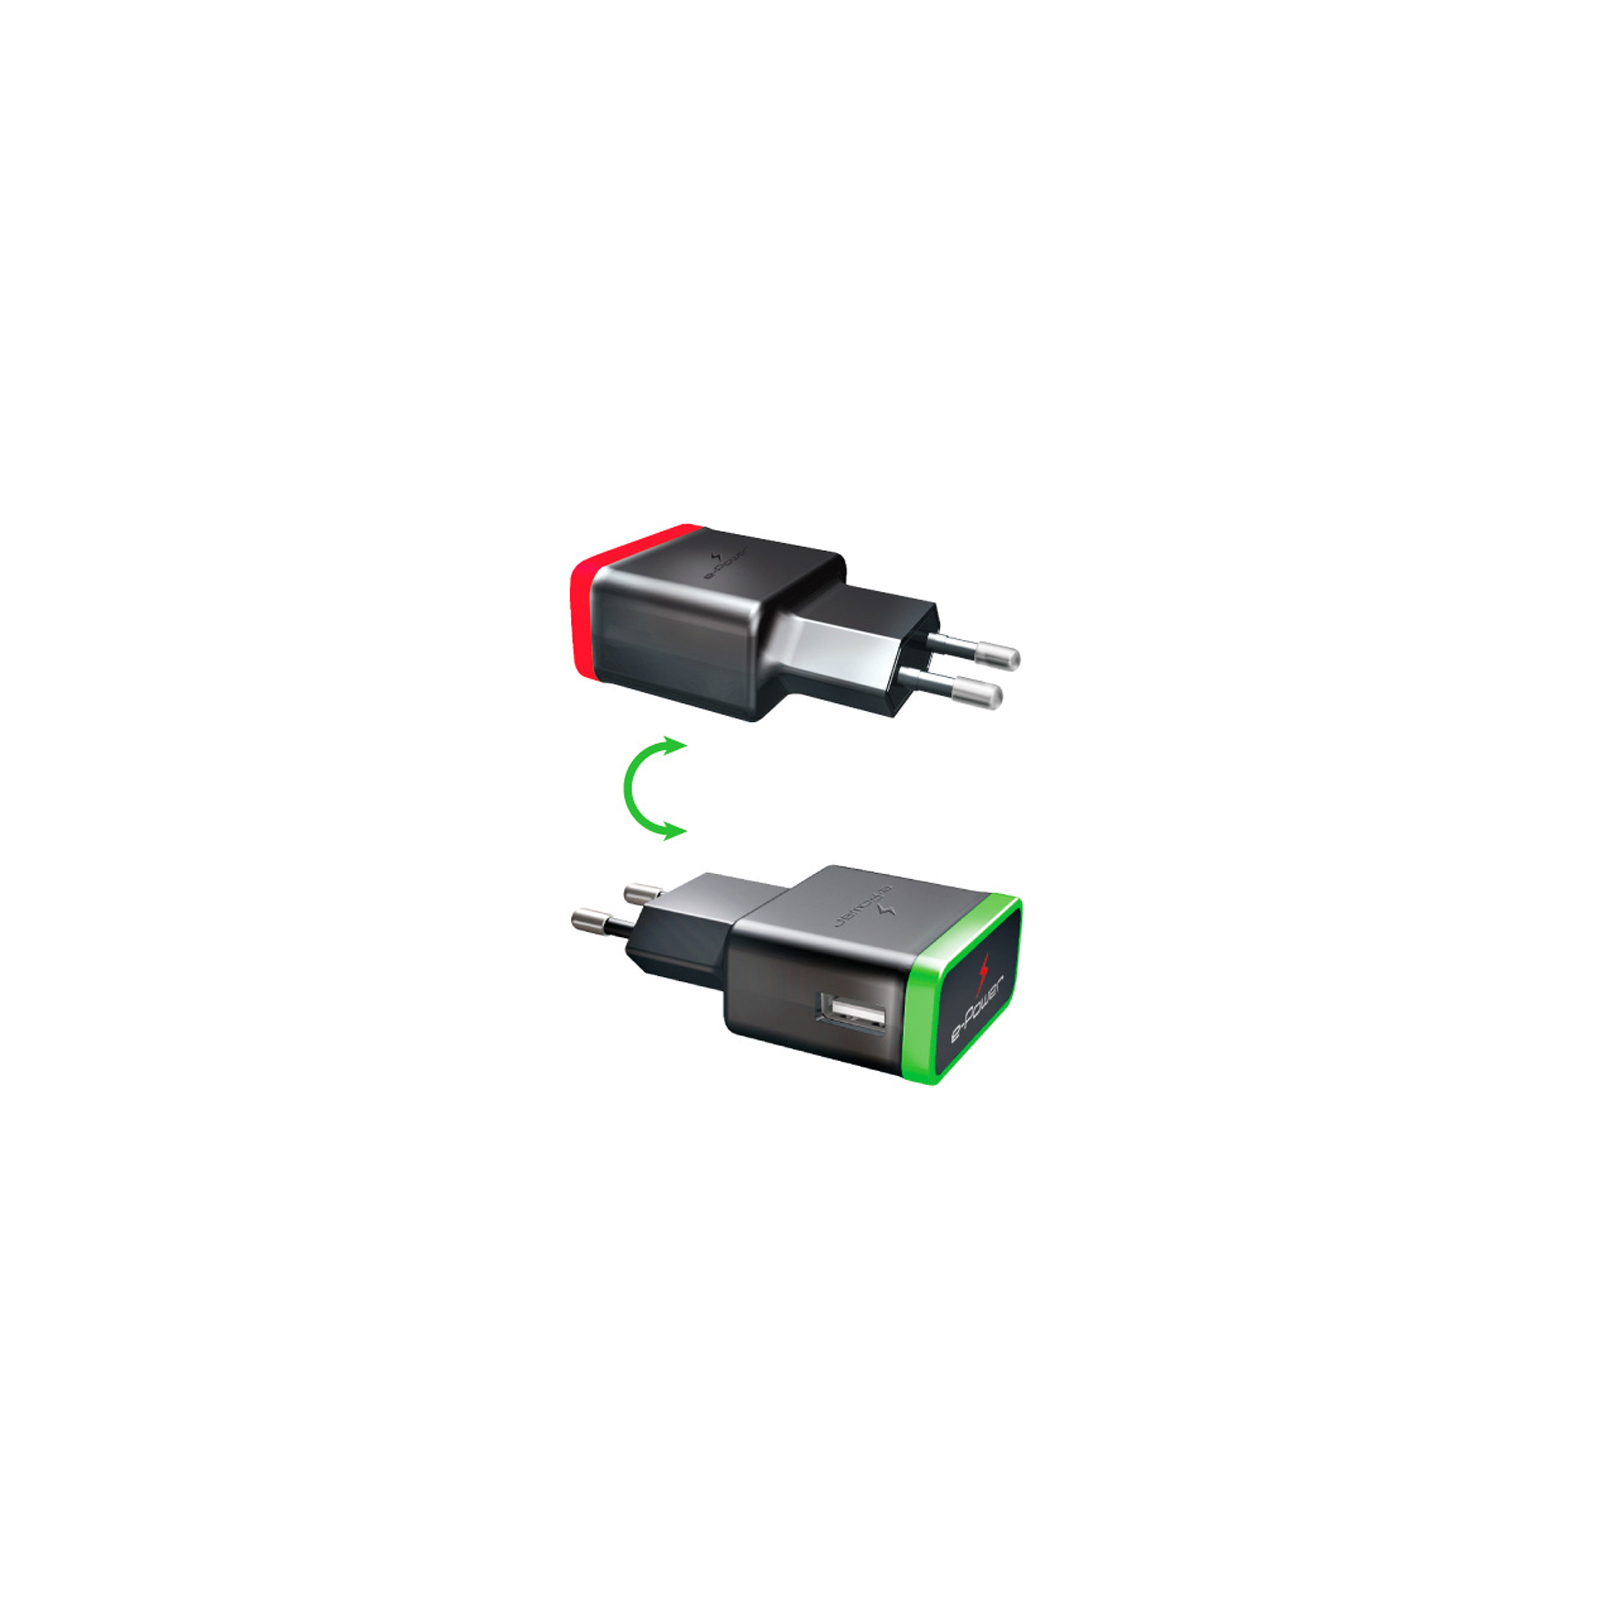 Зарядное устройство E-power 1 * USB 1A + смарт кабель (EP721HAS) изображение 2